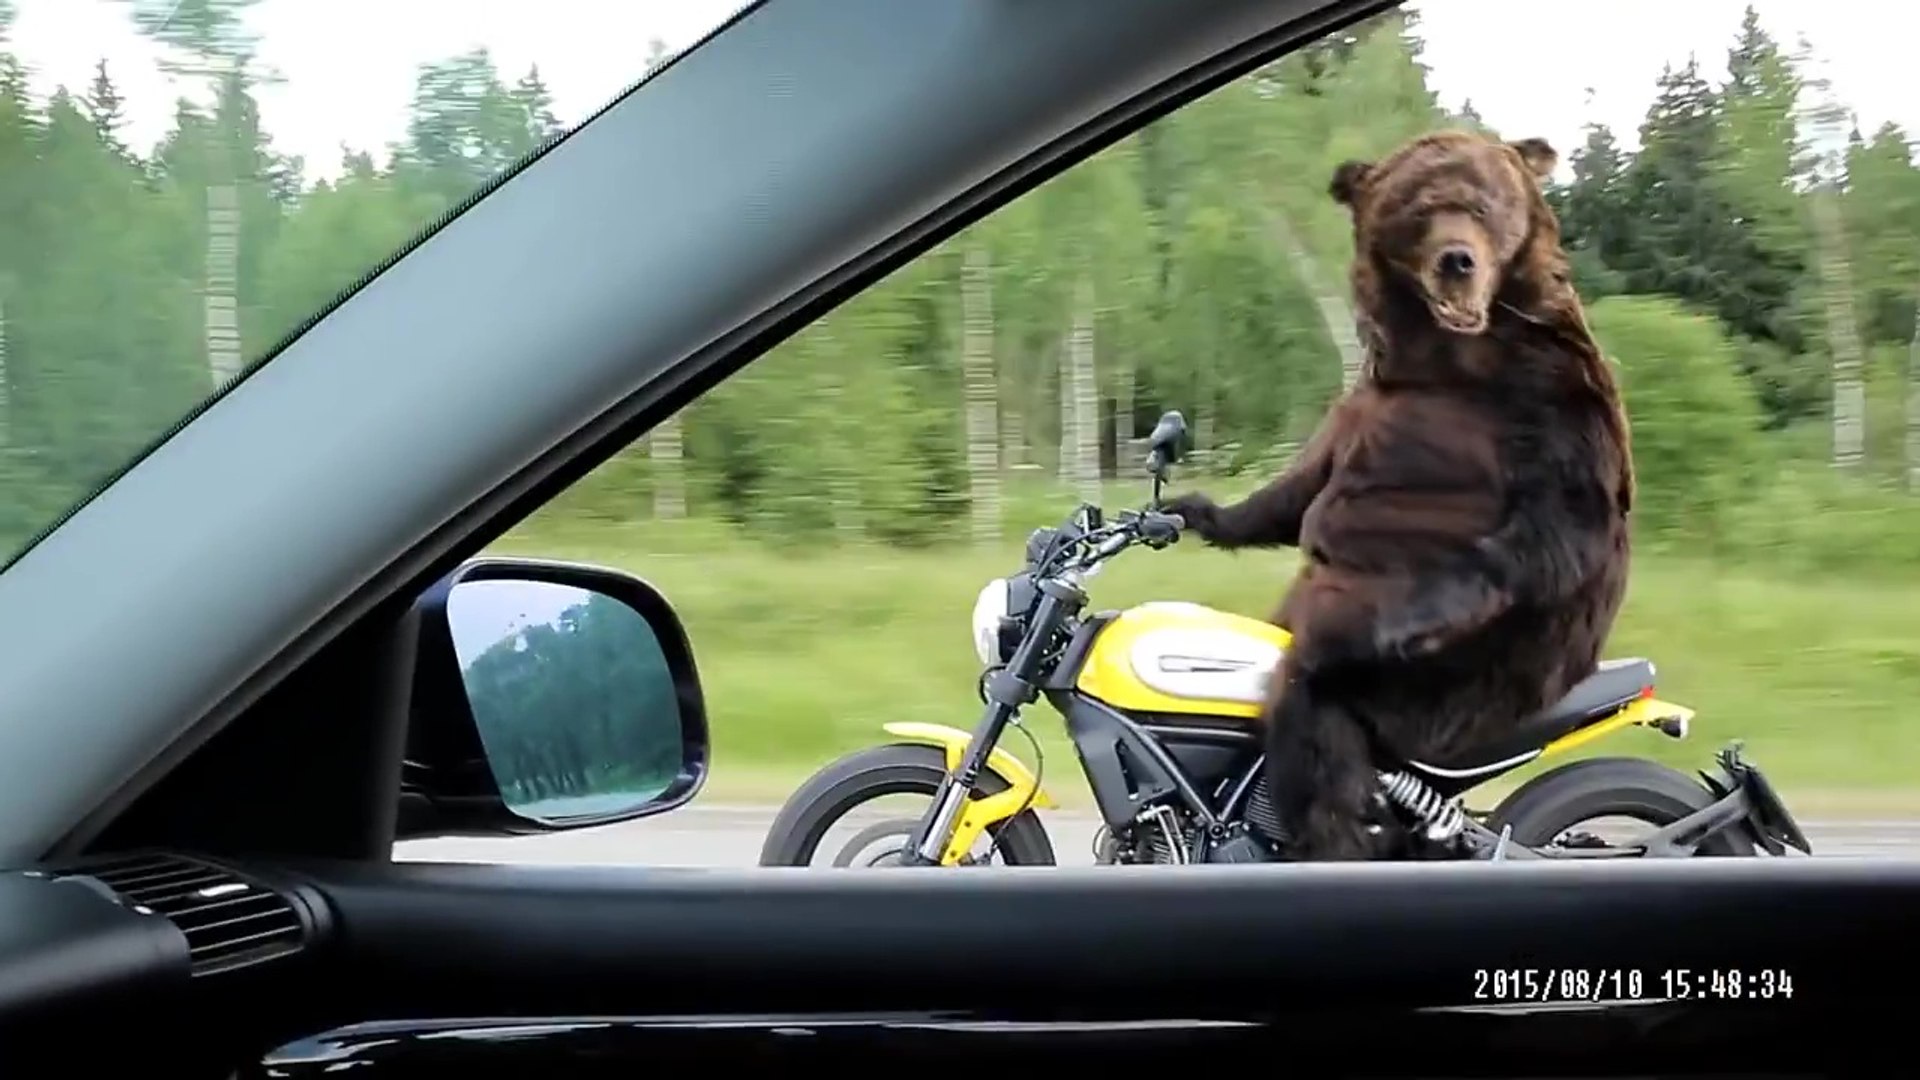 Мотоцикл догнал автомобиль. Обезьяна на мотоцикле. Медведь на мотоцикле. Медведь за рулем мотоцикла. Обезьяна за рулем мотоцикла.